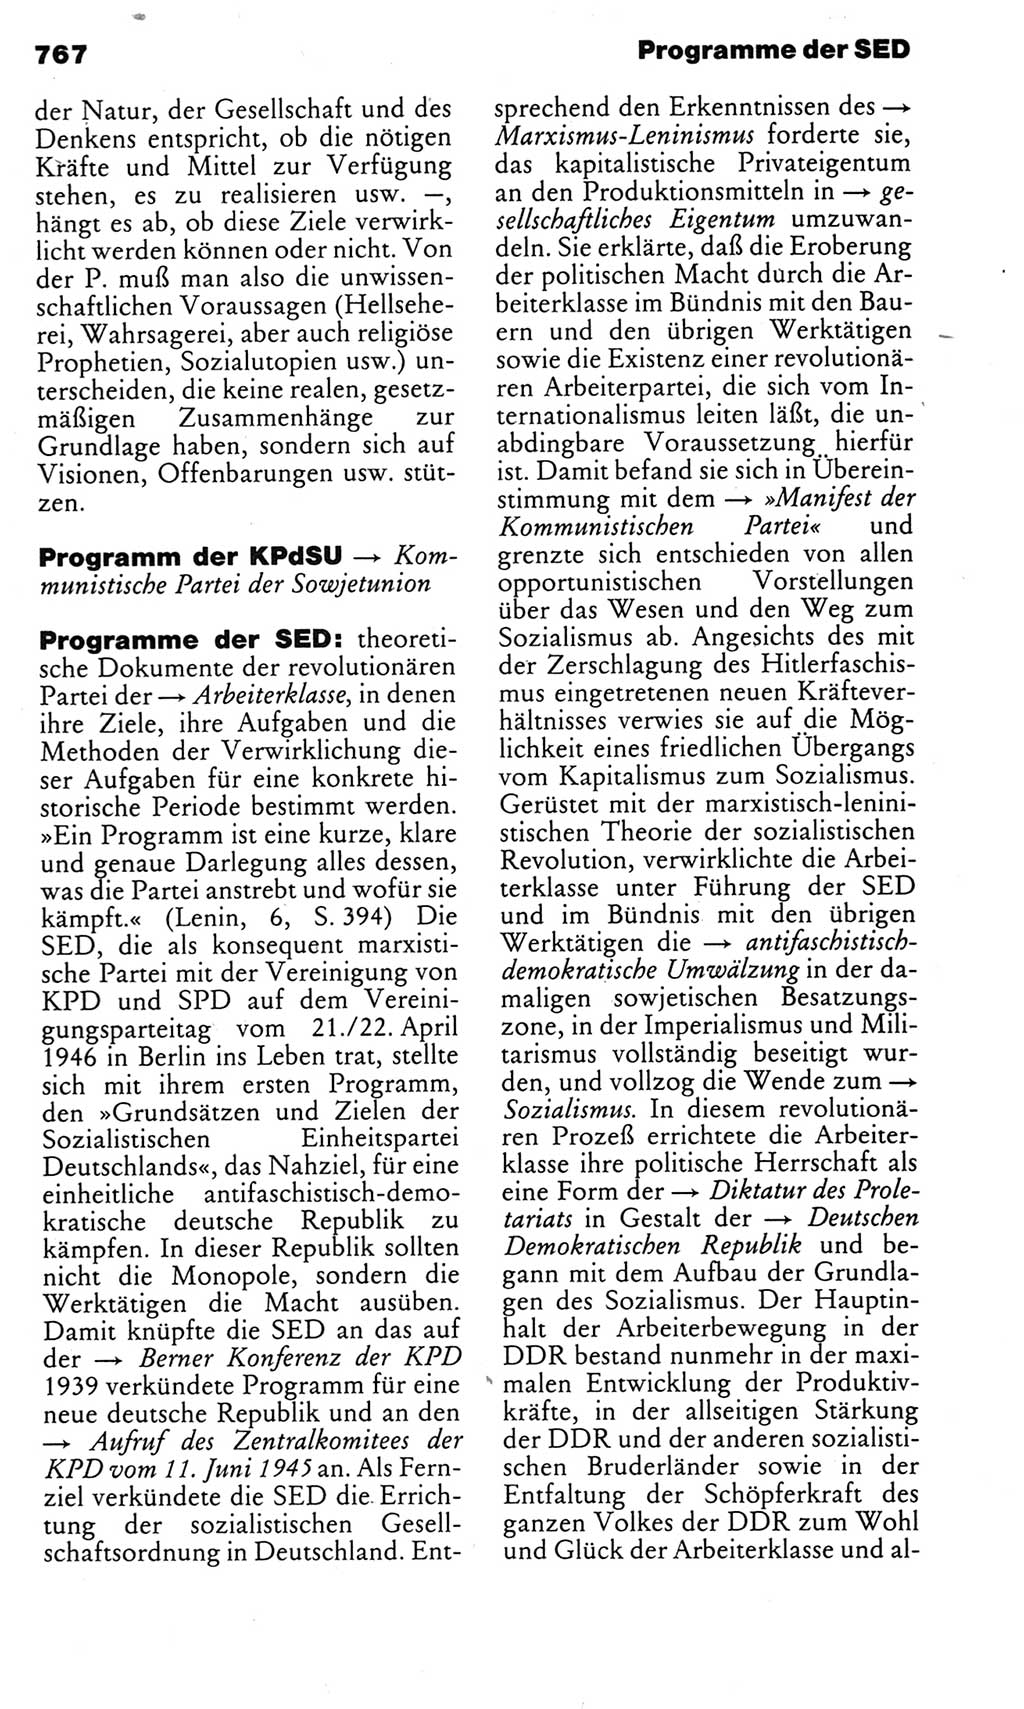 Kleines politisches Wörterbuch [Deutsche Demokratische Republik (DDR)] 1983, Seite 767 (Kl. pol. Wb. DDR 1983, S. 767)